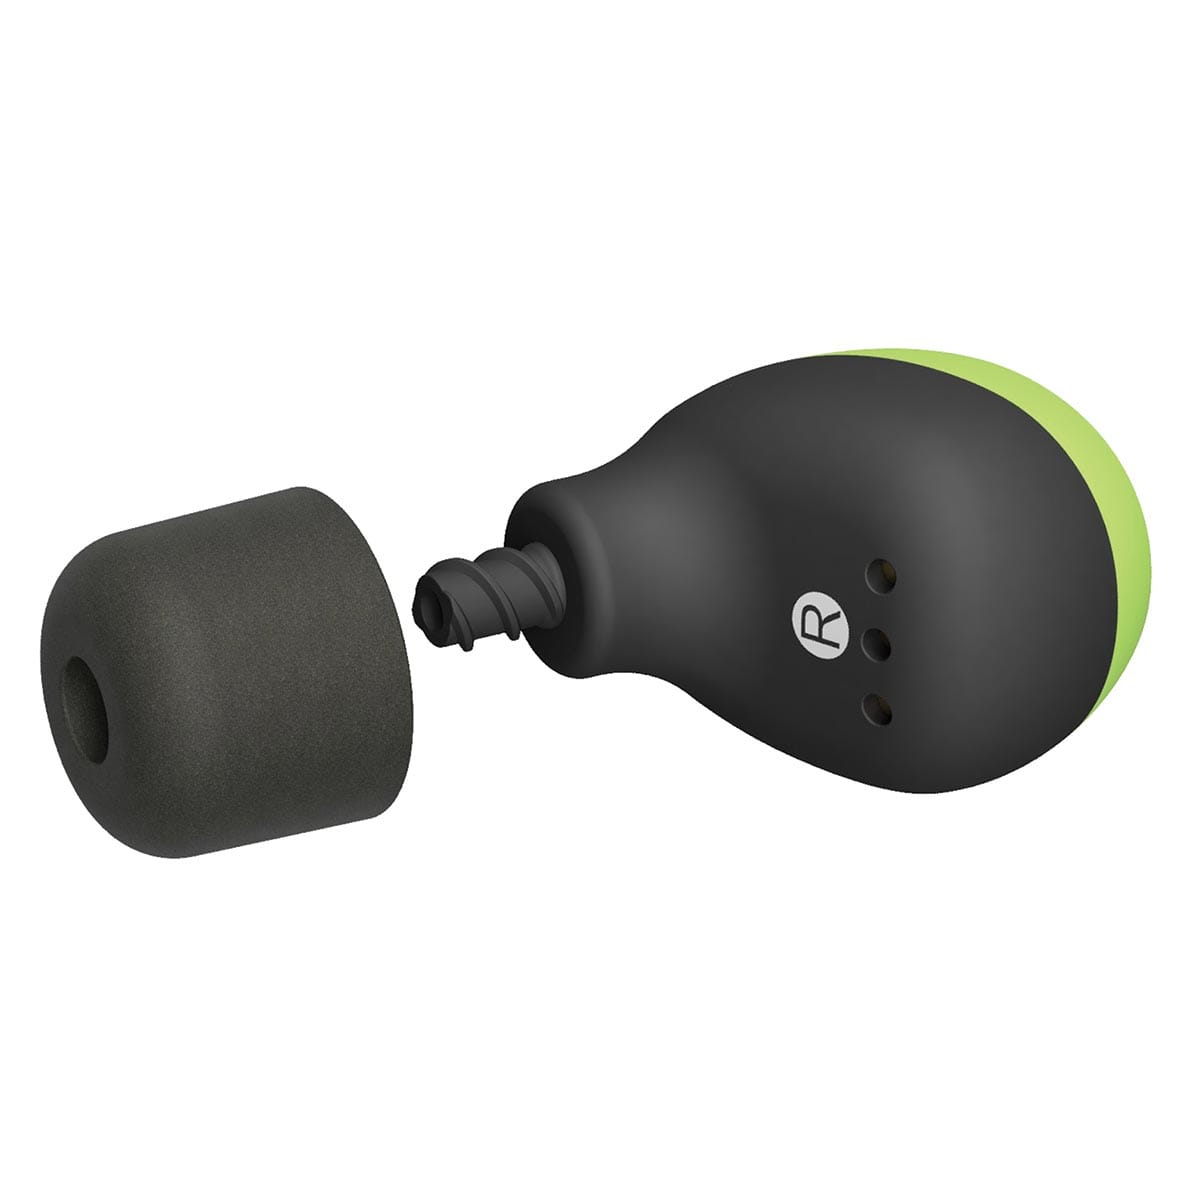 ISOtunes FREE 2.0 True Wireless Bluetooth Earbuds - Safety Green